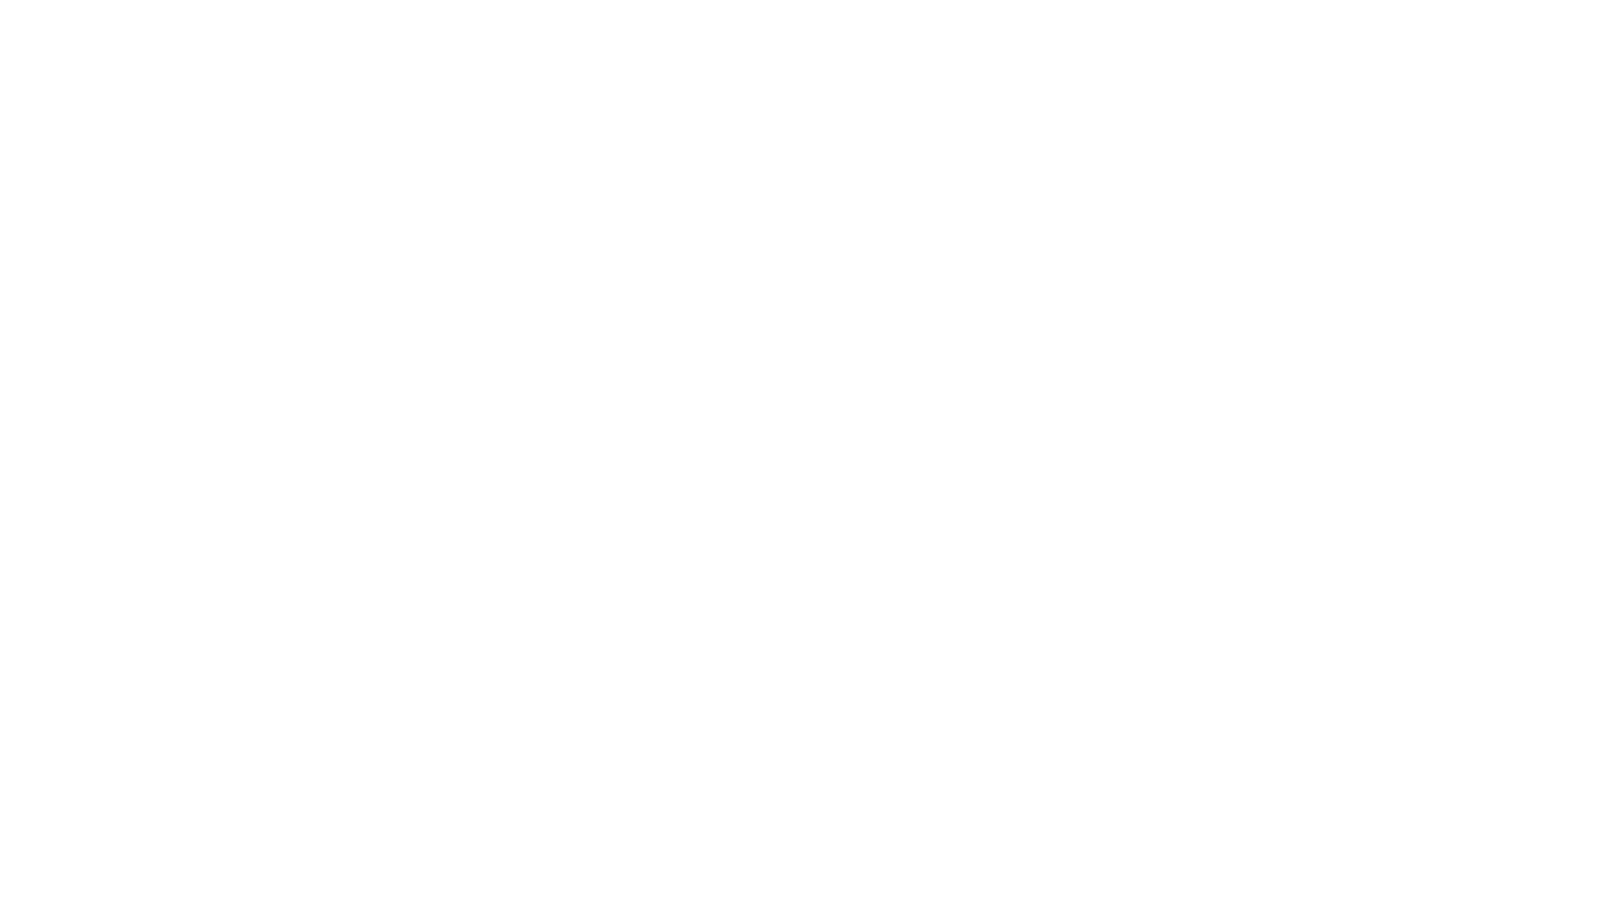 ТОО «Индивидуальное решение» под торговым брендом EUROCOLOR, находится на рынке с 2020 года, активно занимается реализацией химической продукции на территории Республики Казахстан и за ее пределами.

Наша компания — официальный дистрибьютер Чешского производителя железооксидных пигментов Precheza a.s., Белорусского завода добавок для бетонов ЗАО Frem, российского завода Ecotermix полиуретановых компонентов.

Мы способны осуществлять поставки в любых объемах и в кратчайшие сроки. Менеджеры компании всегда найдут наиболее приемлемые решения, сделают точный расчет и подбор необходимых материалов. Наша продукция полностью отвечает стандартам качества, подтвержденным международными лабораториями.

Продукция компании имеет широкое применение в индустрии строительства, гарантируя высокие технические и качественные характеристики.